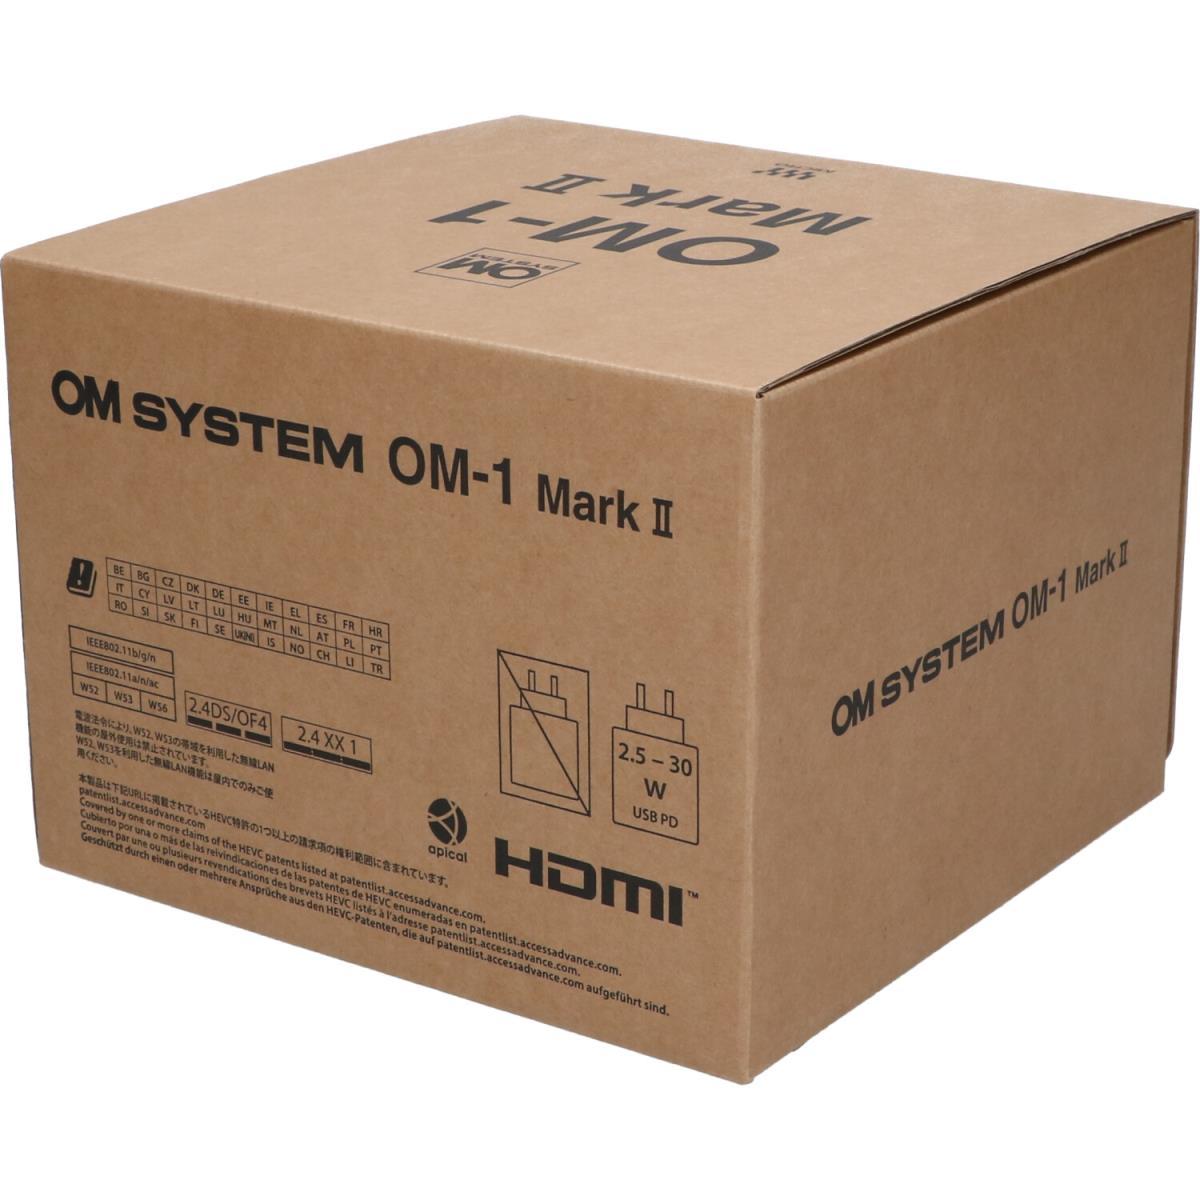 [Unused items] OM SYSTEM OM-1MARK II